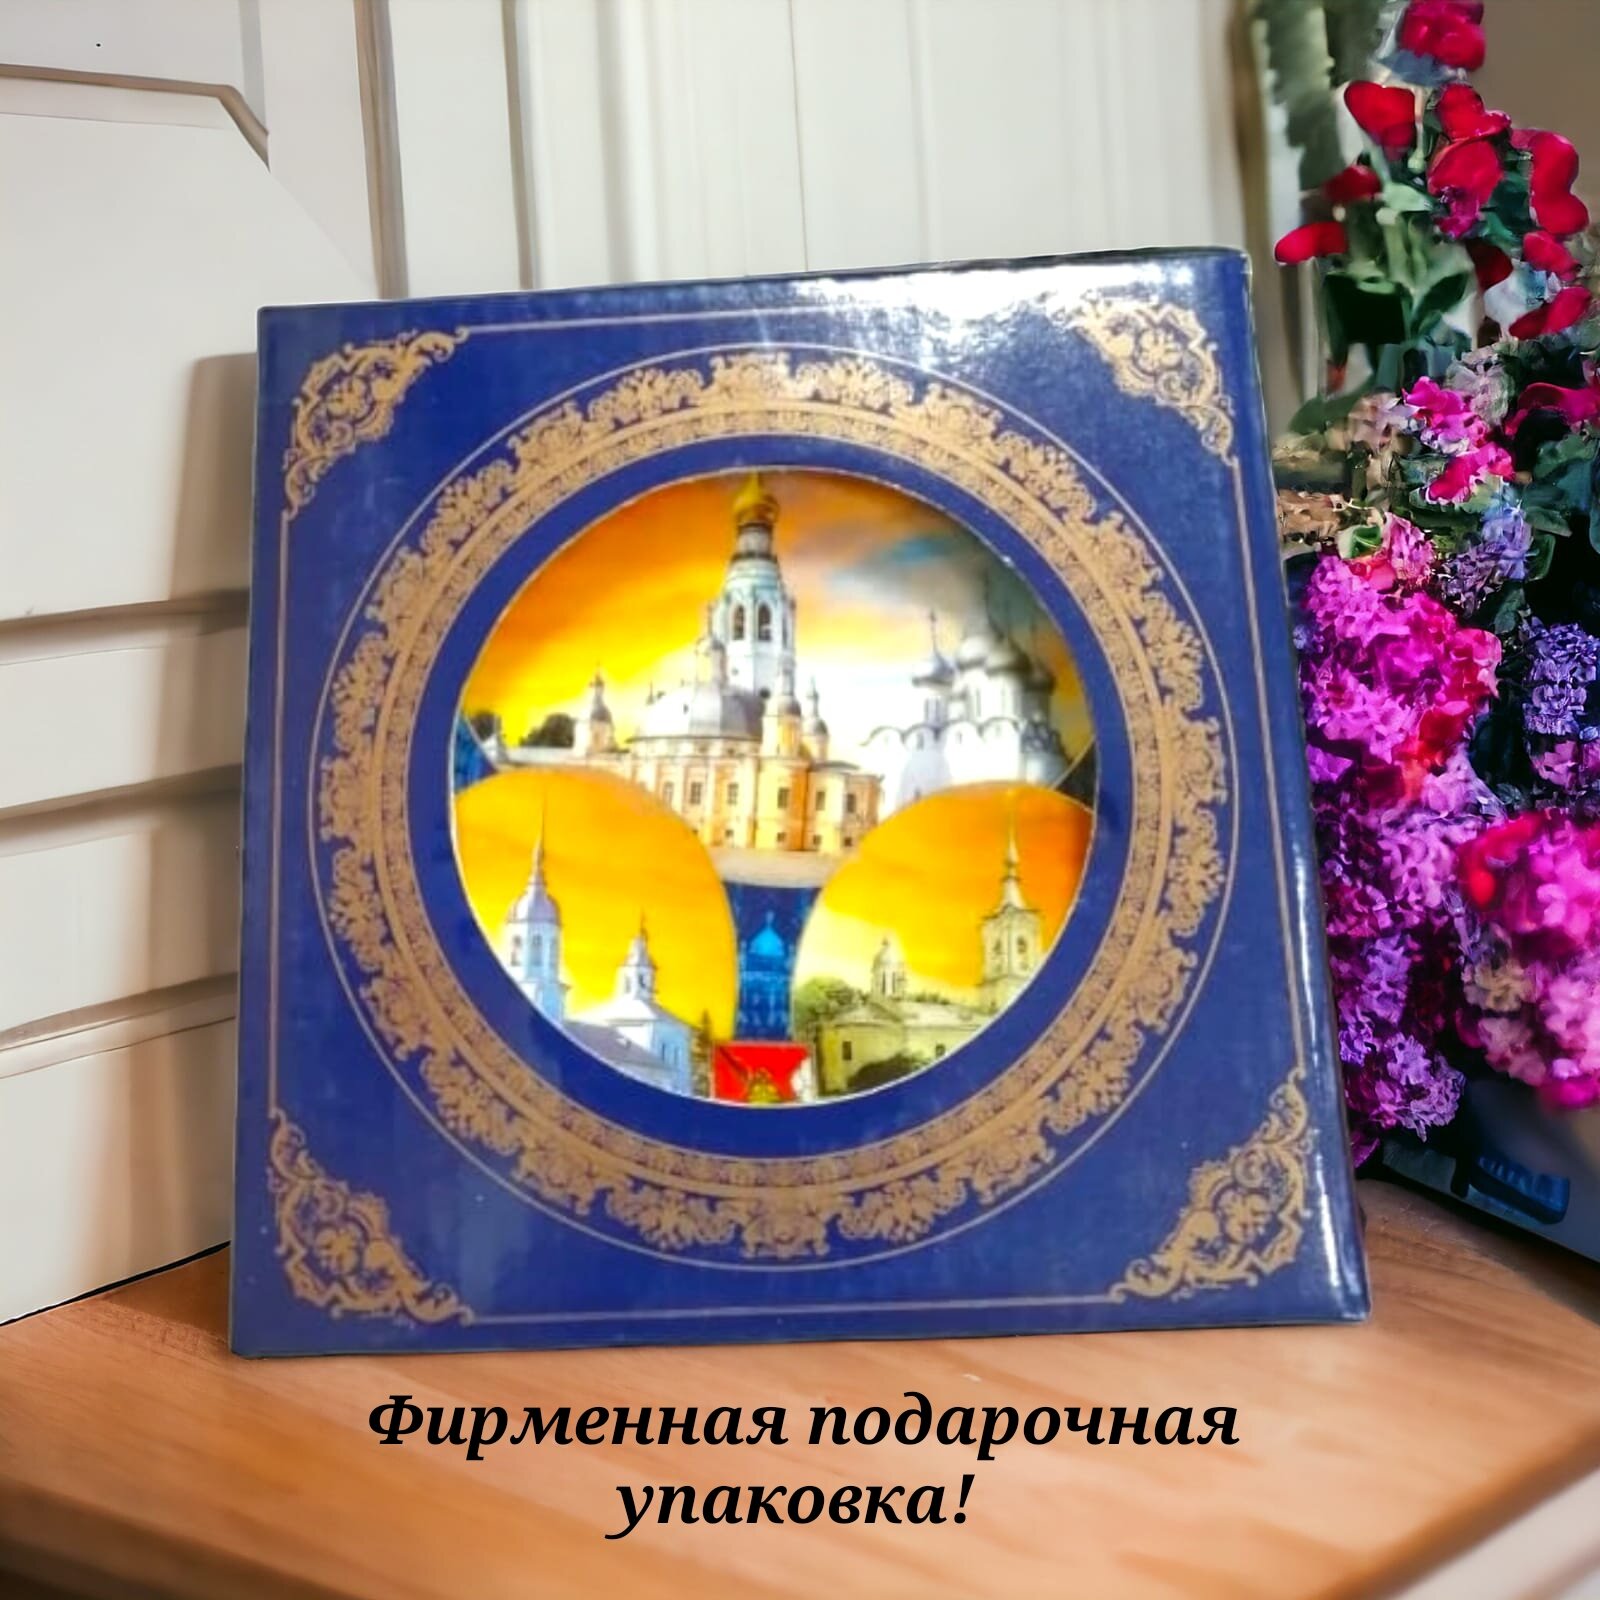 Сувенирная тарелка на подставке Вологда 12 см в подарок магнит Вологда! 18201